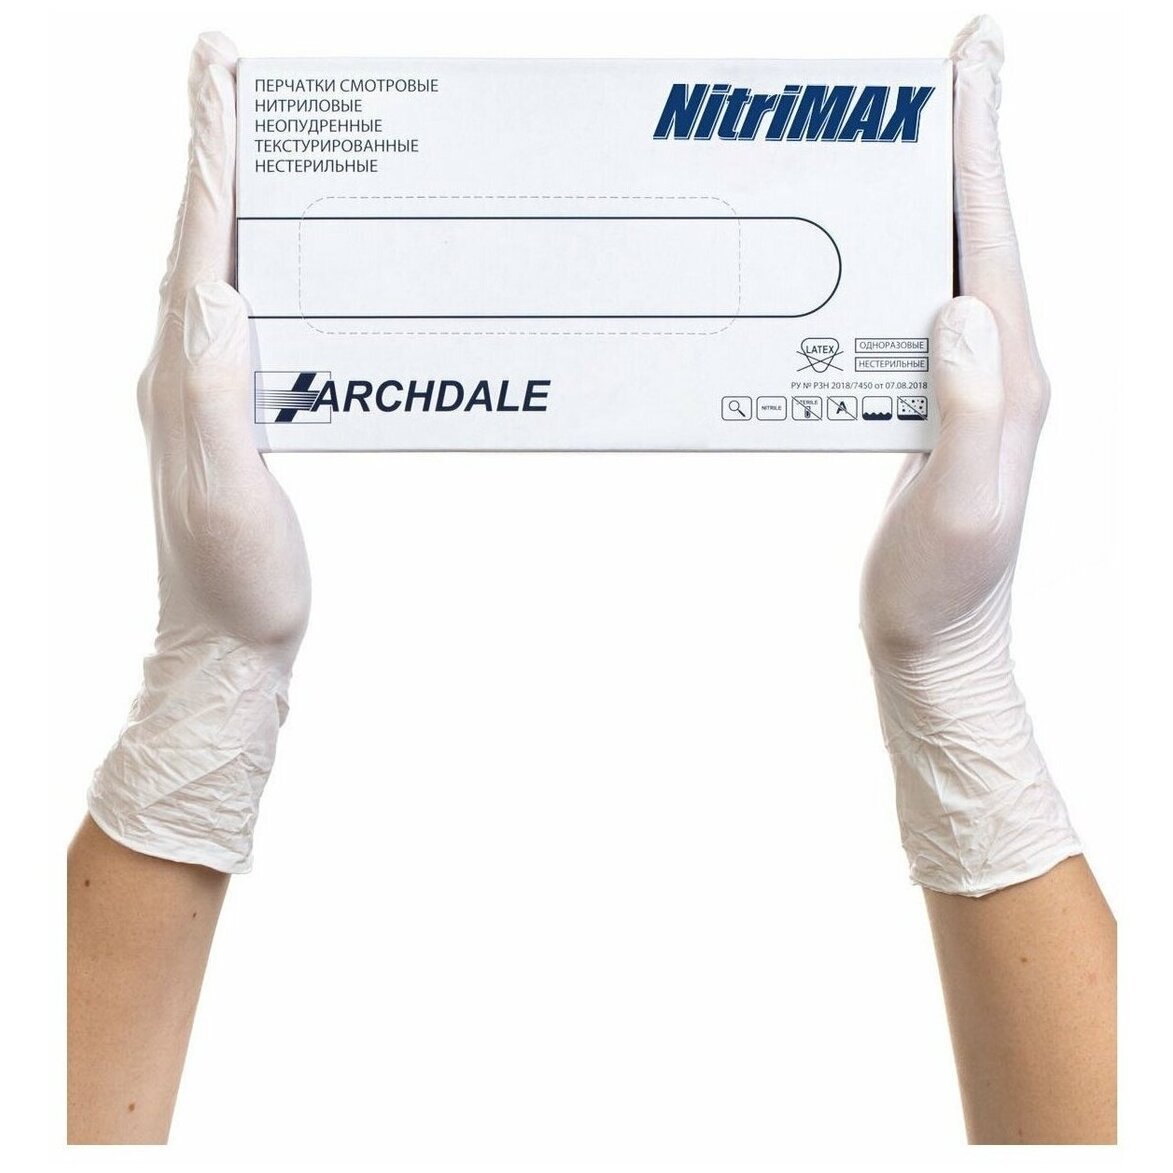 Перчатки Archdale Nitrimax смотровые нестерильные нитриловые неопудренные текстурированные белые размер L 50 пар